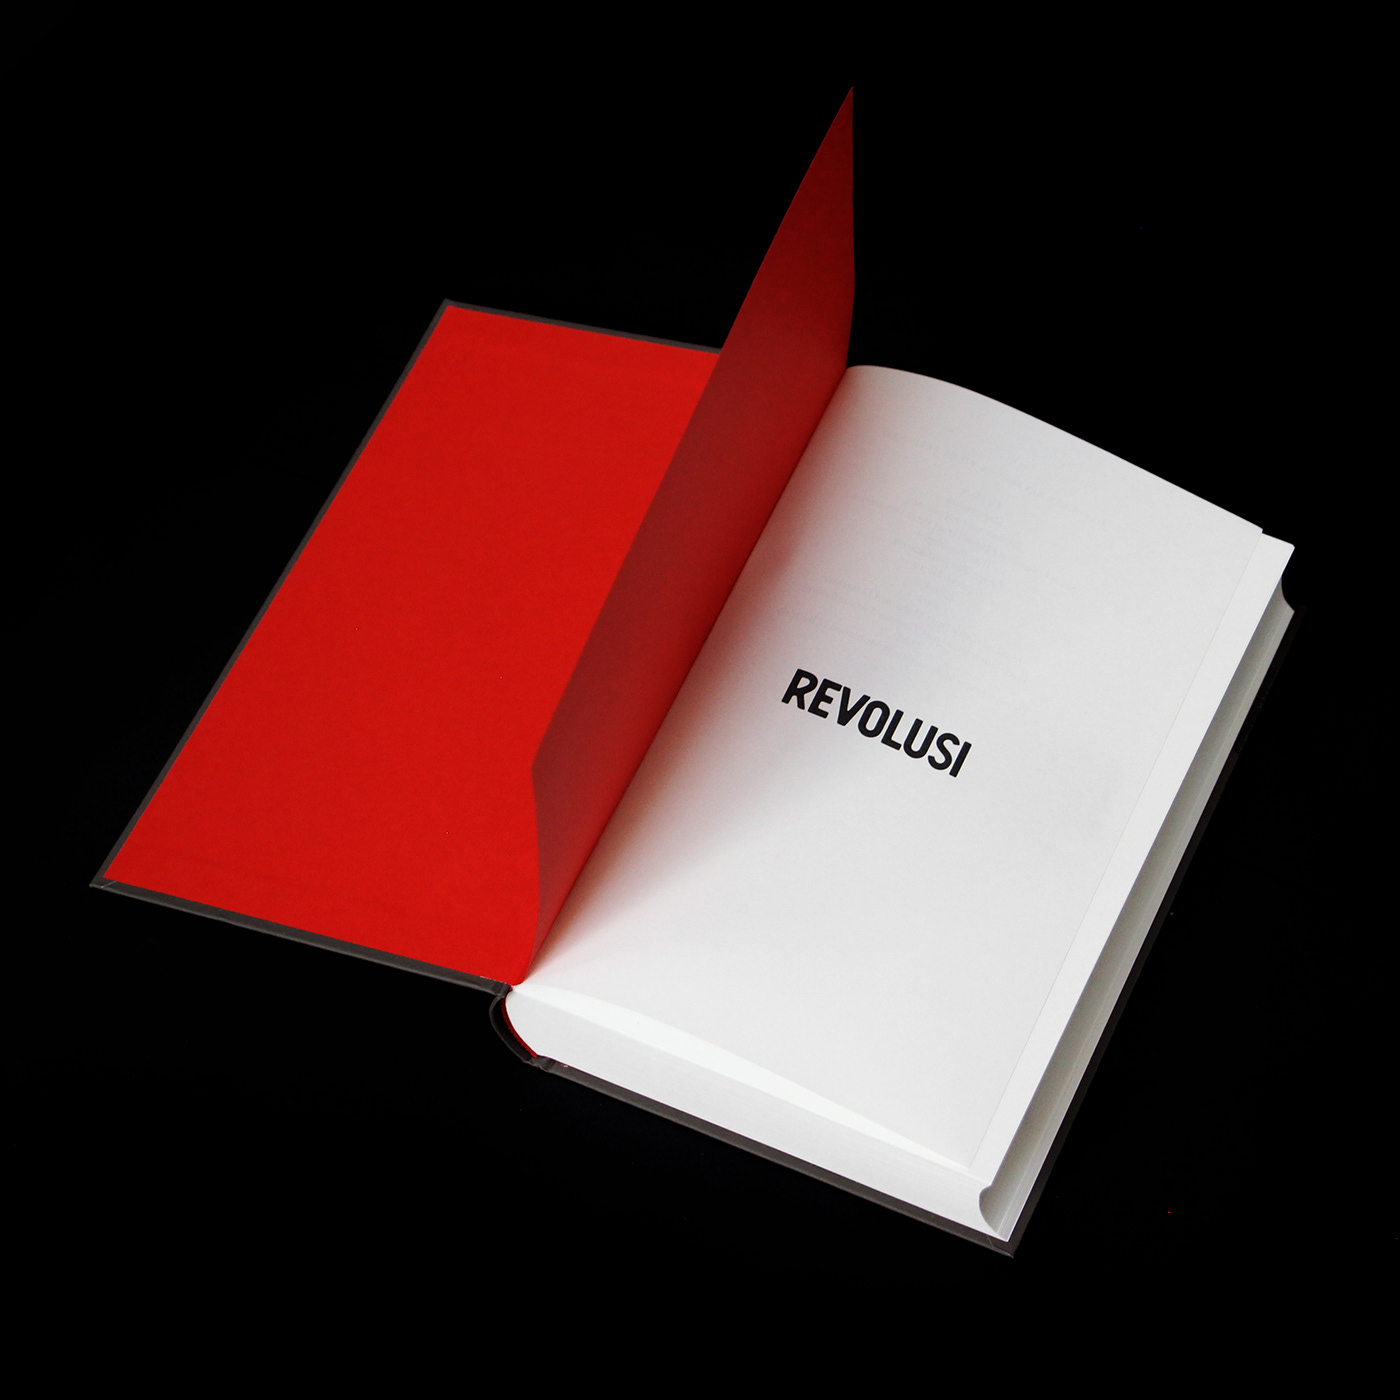 book cover book design cover cover design David Van Reybrouck de bezige bij foil red